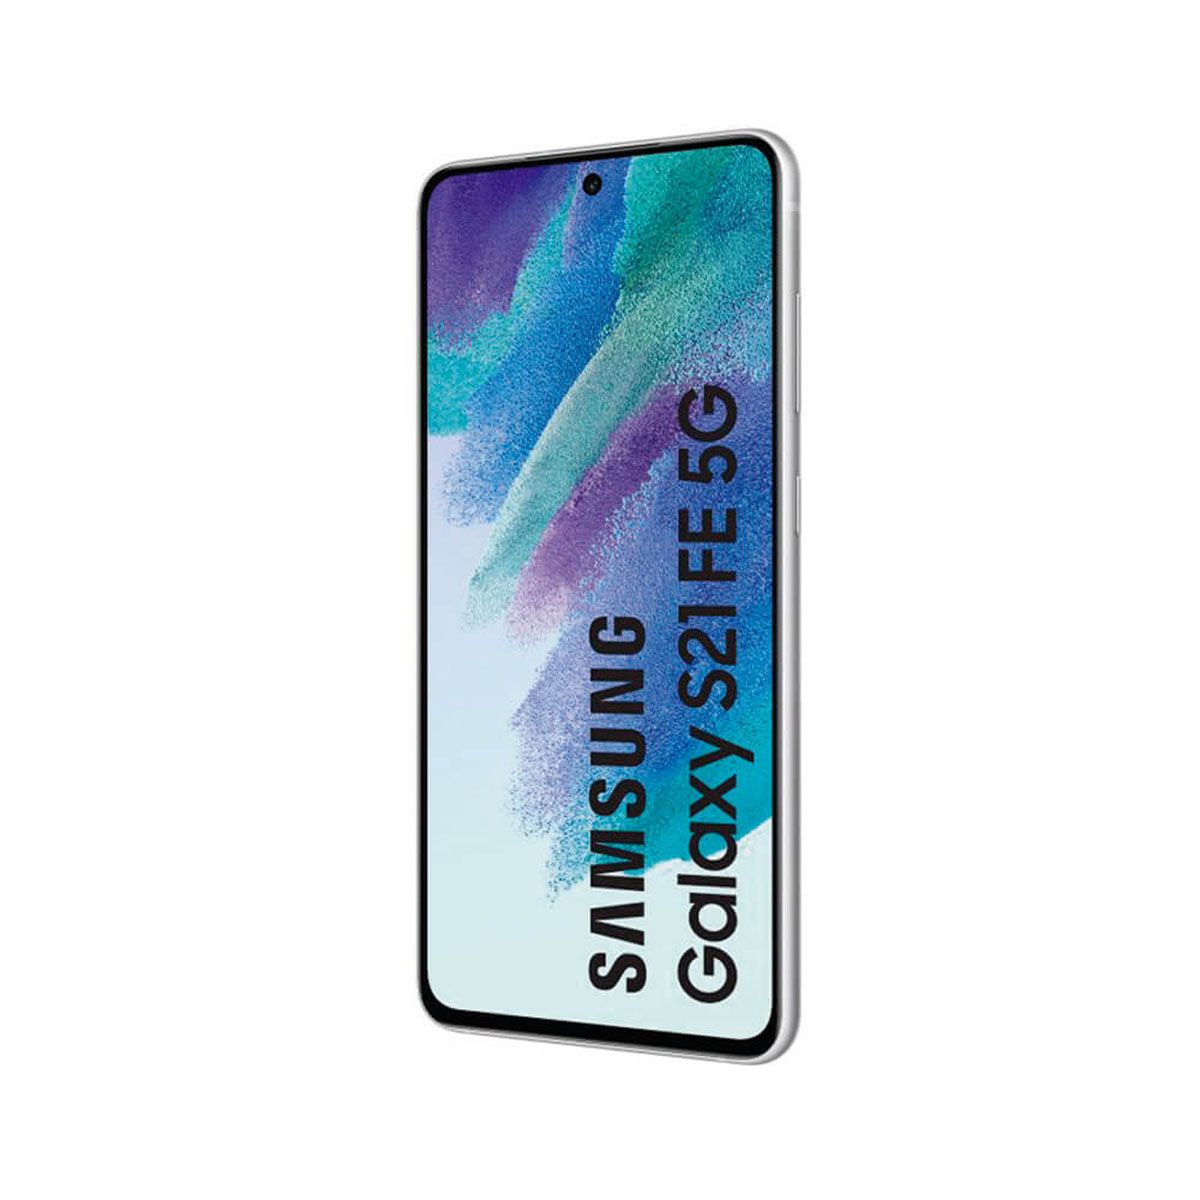 Samsung Galaxy S21 FE 5G 6GB/128GB White (White) Dual SIM G990